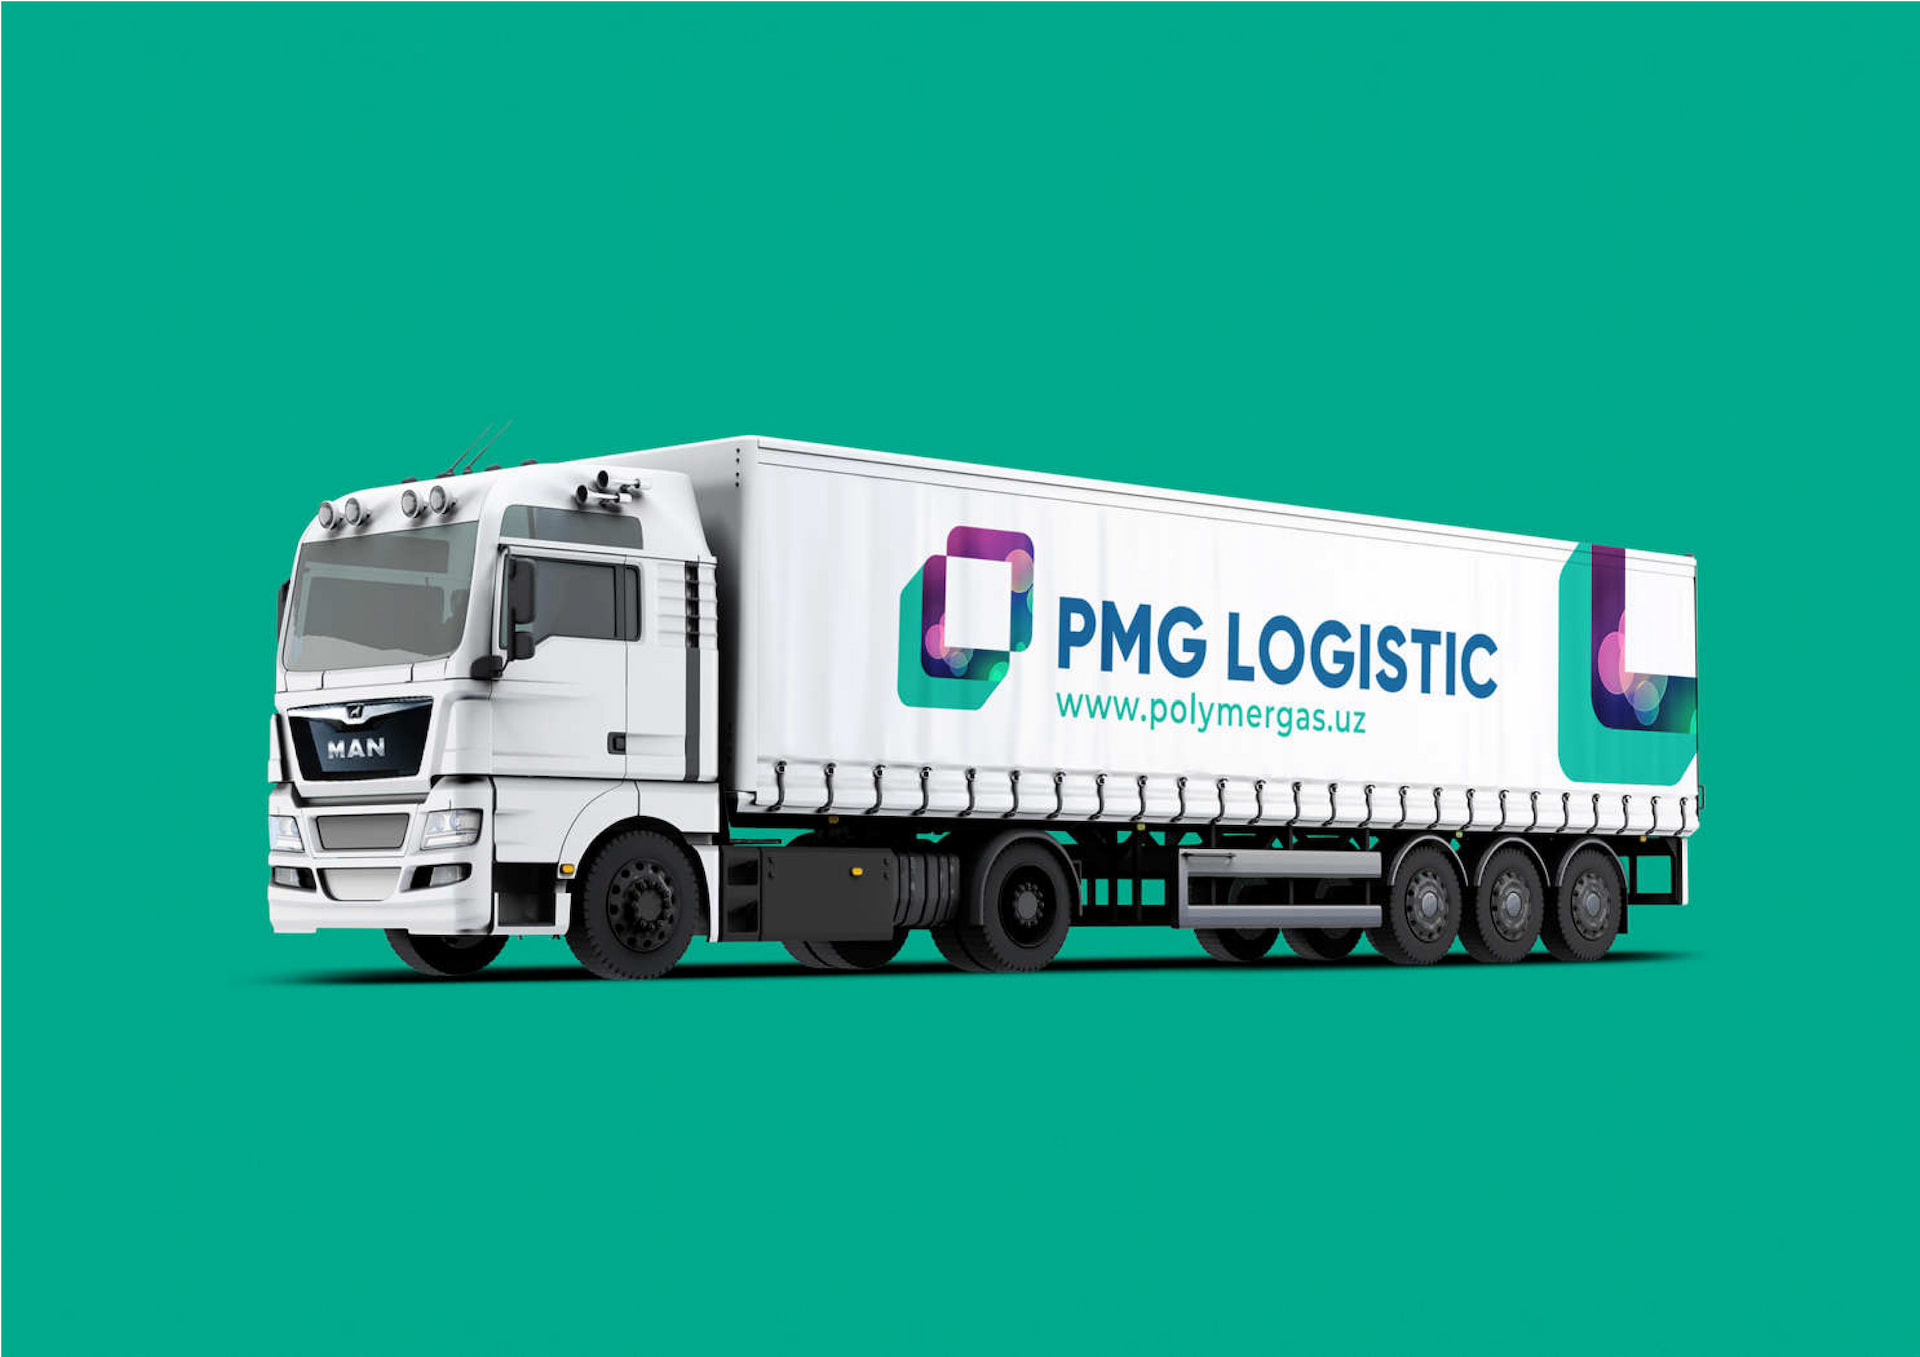 PMG logistic company